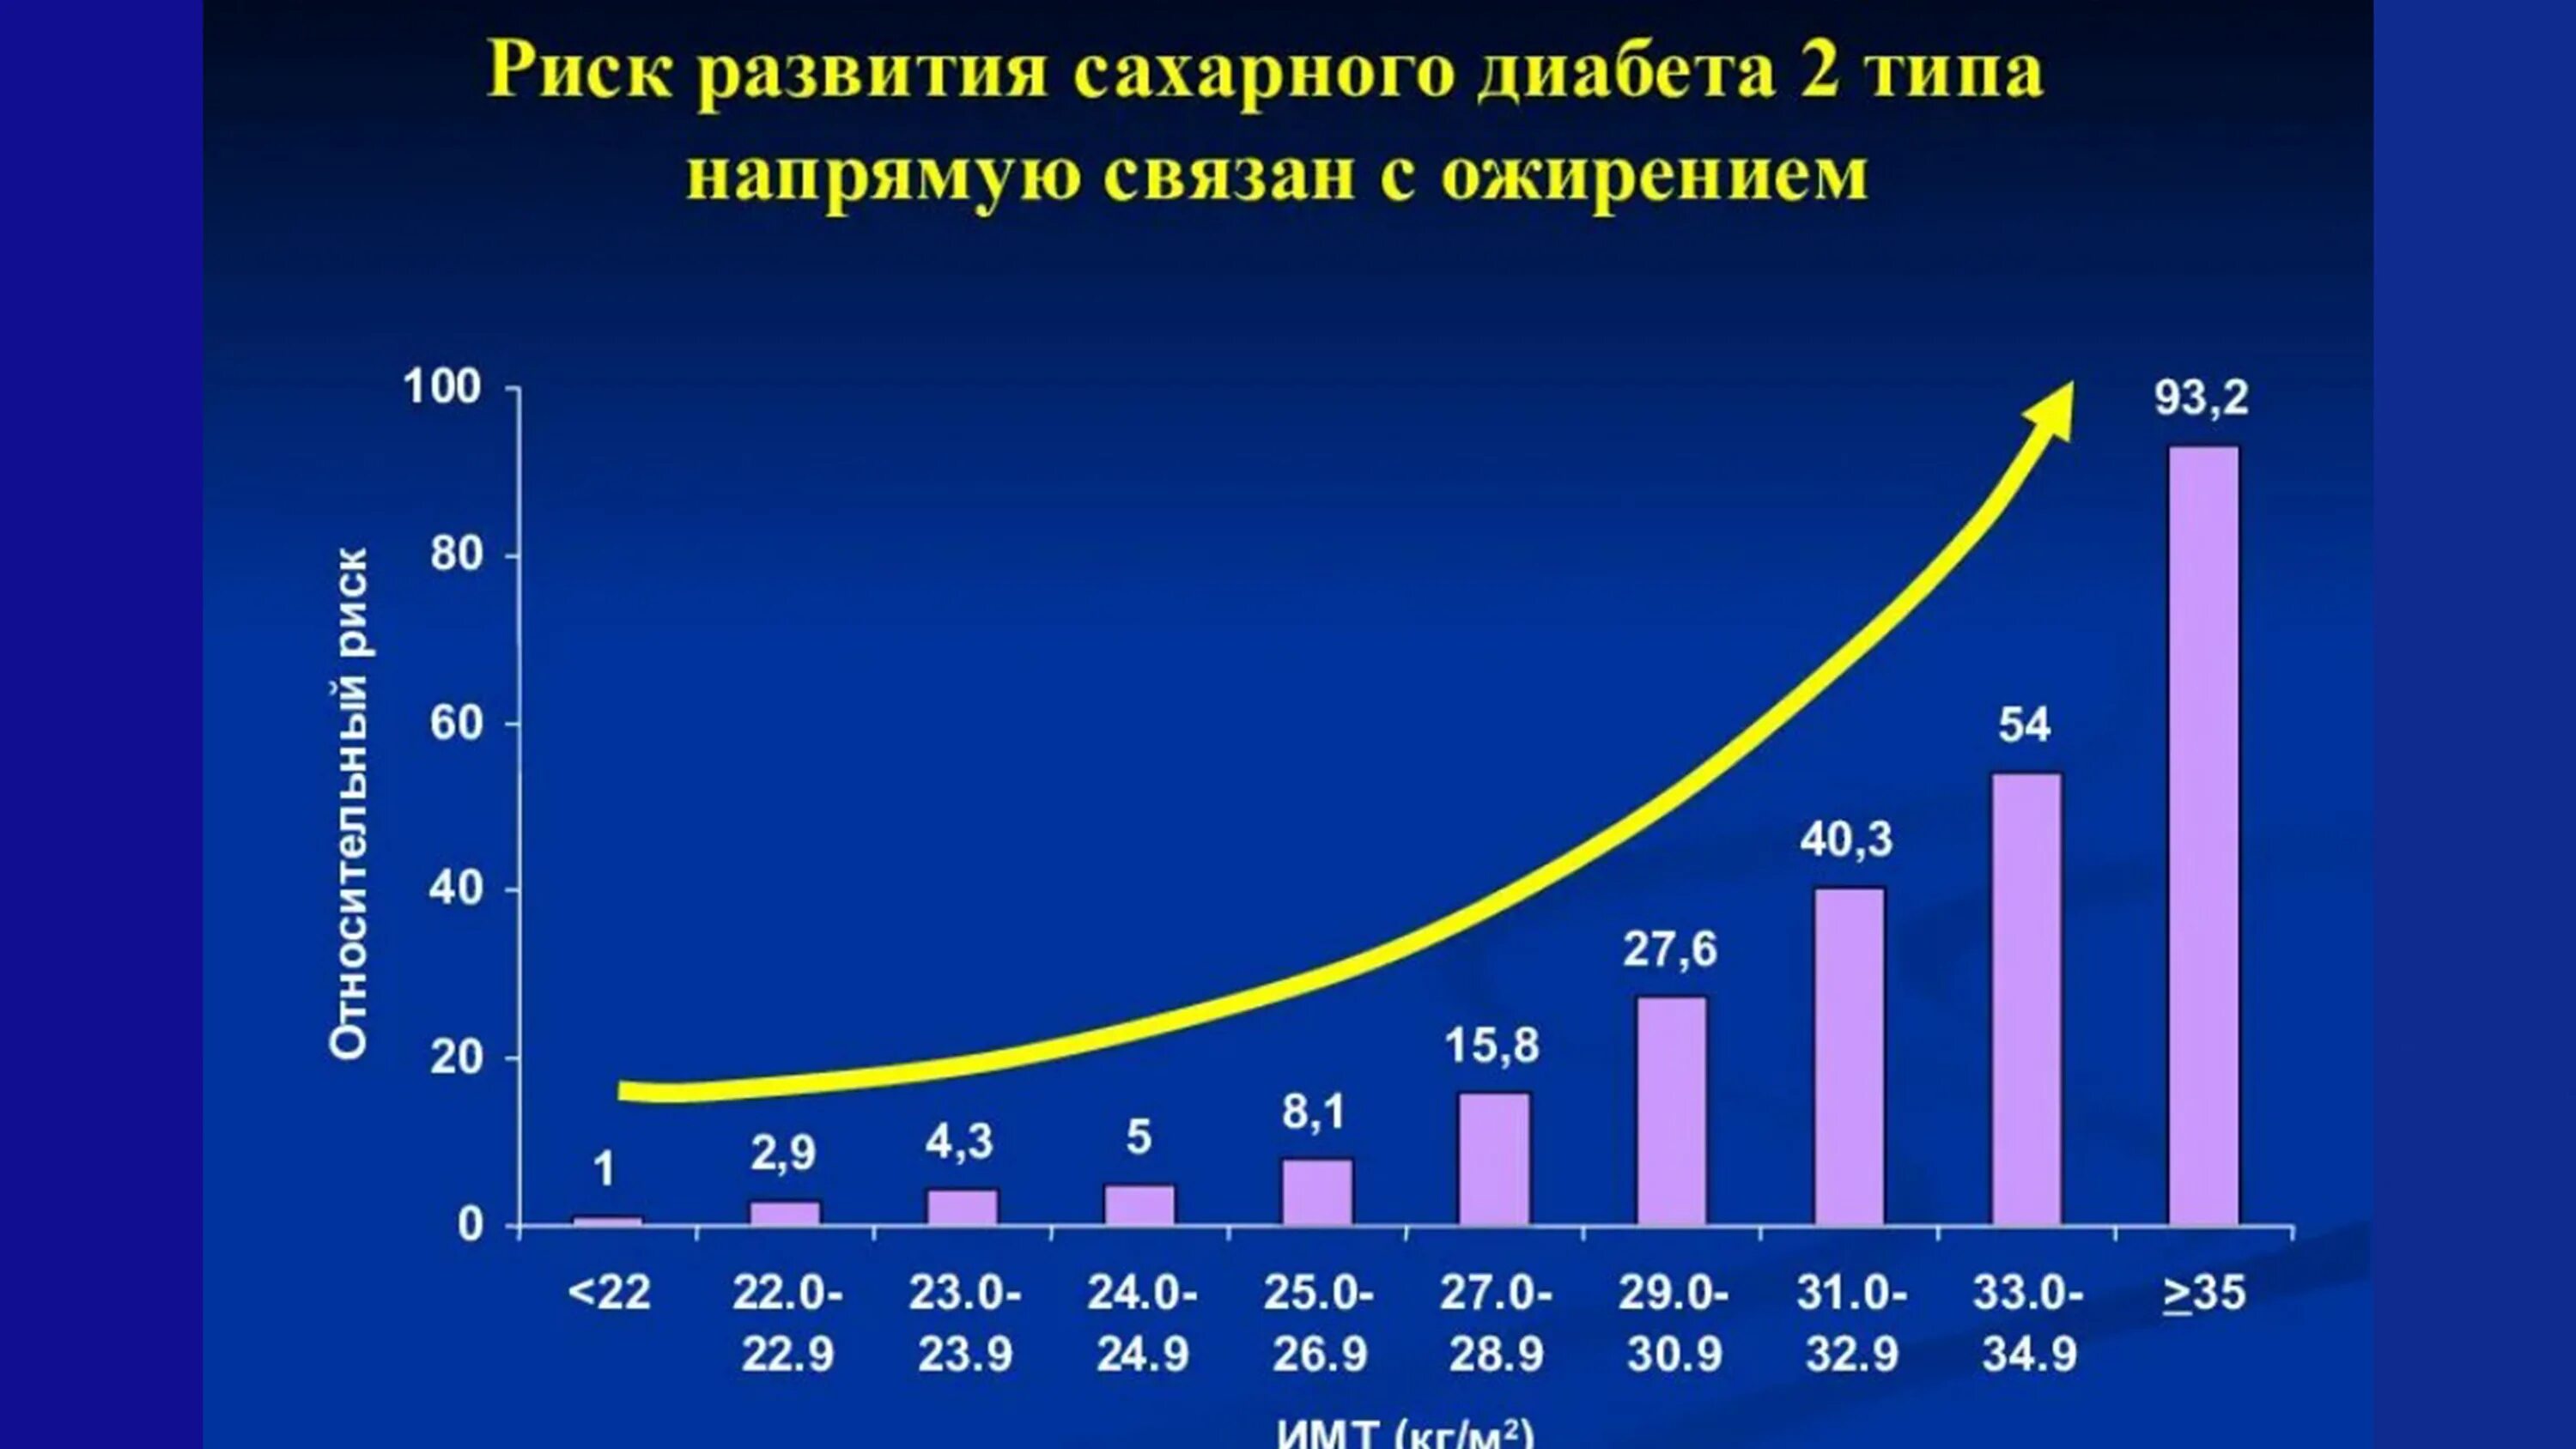 Распространенность сахарного диабета 2 типа в России статистика. Риск развития сахарного диабета 2 типа. Распространенность сахарного диабета в России диаграмма. Статистика заболеваемости диабетом 2 типа в России.